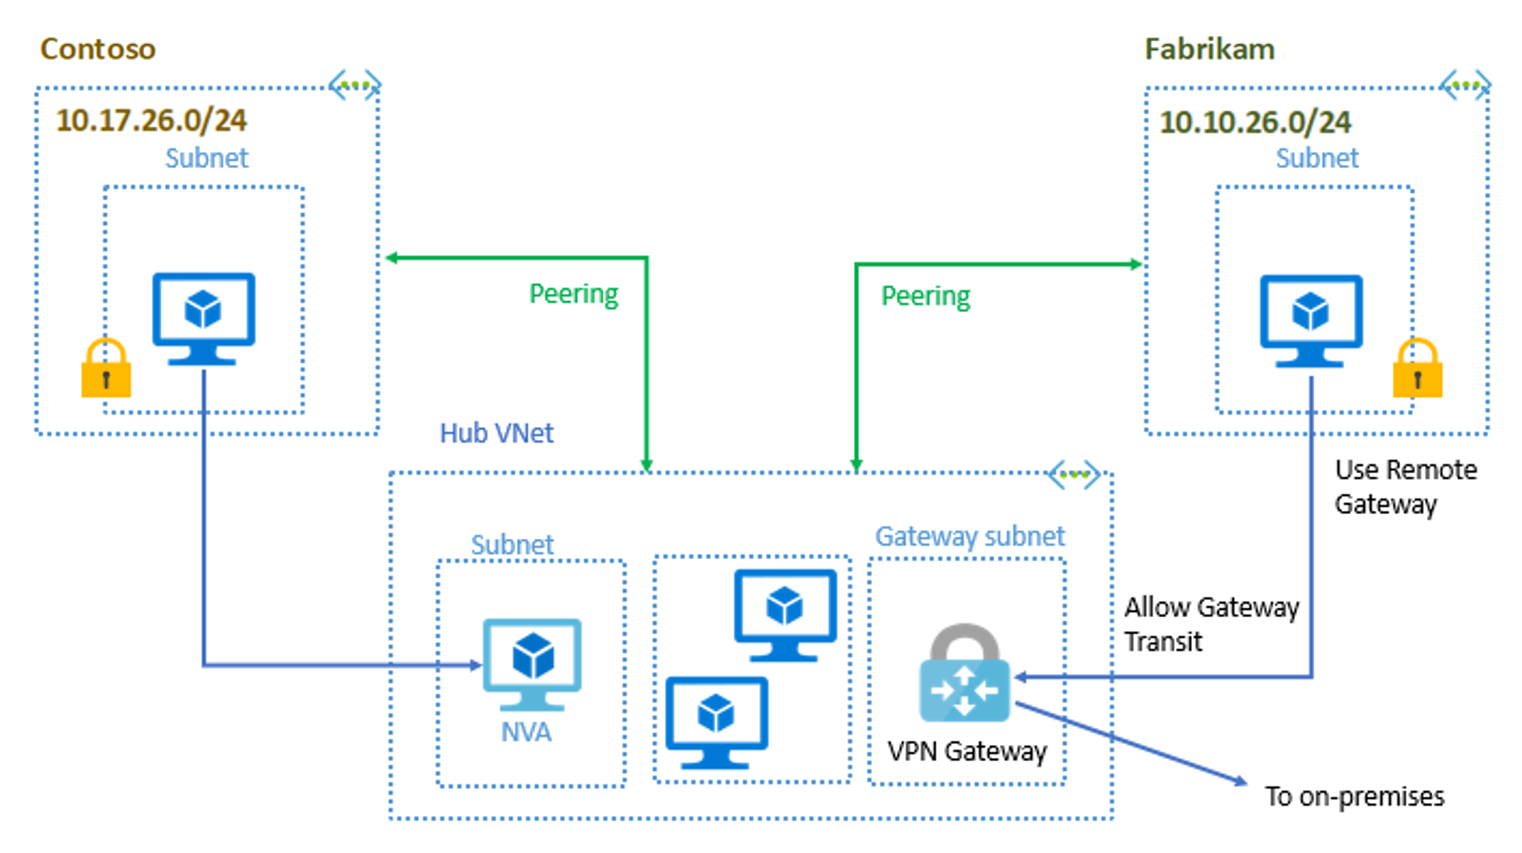 中樞和輪輻組態 - Contoso 和 Fabrikam 對等互連中樞 VNet。中樞 VNet 包含連線至內部部署網路的 NVA、VM 和 VPN 閘道。